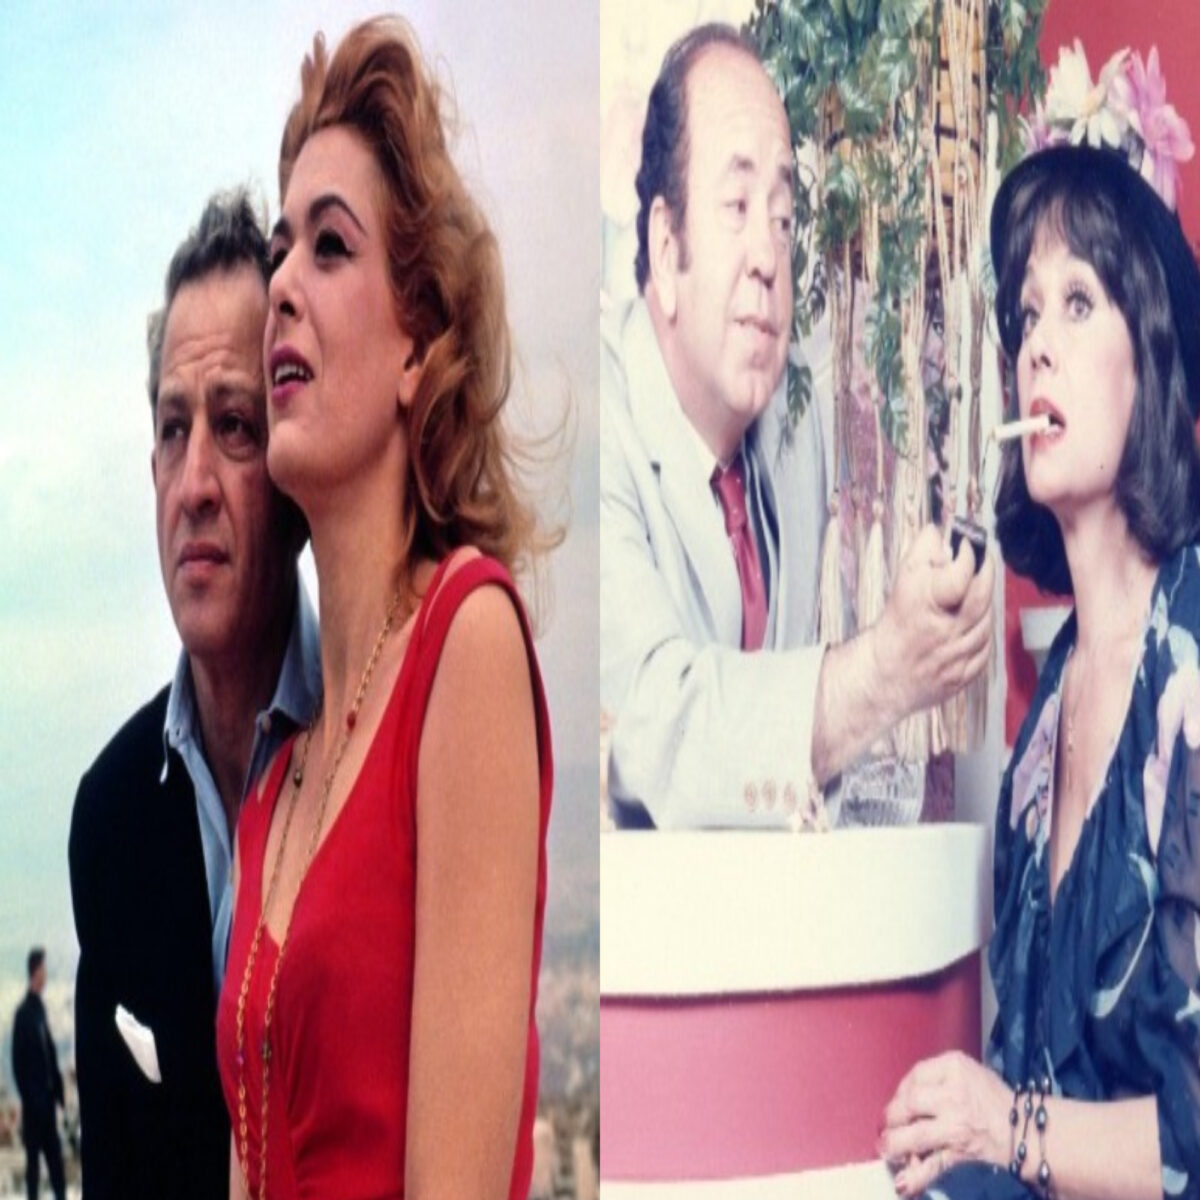 Αγάπη μέχρι το τέλος: 5 ζευγάρια διάσημων Ελλήνων που ο έρωτάς τους κράτησε, μέχρι να τους χωρίσει ο θάνατος